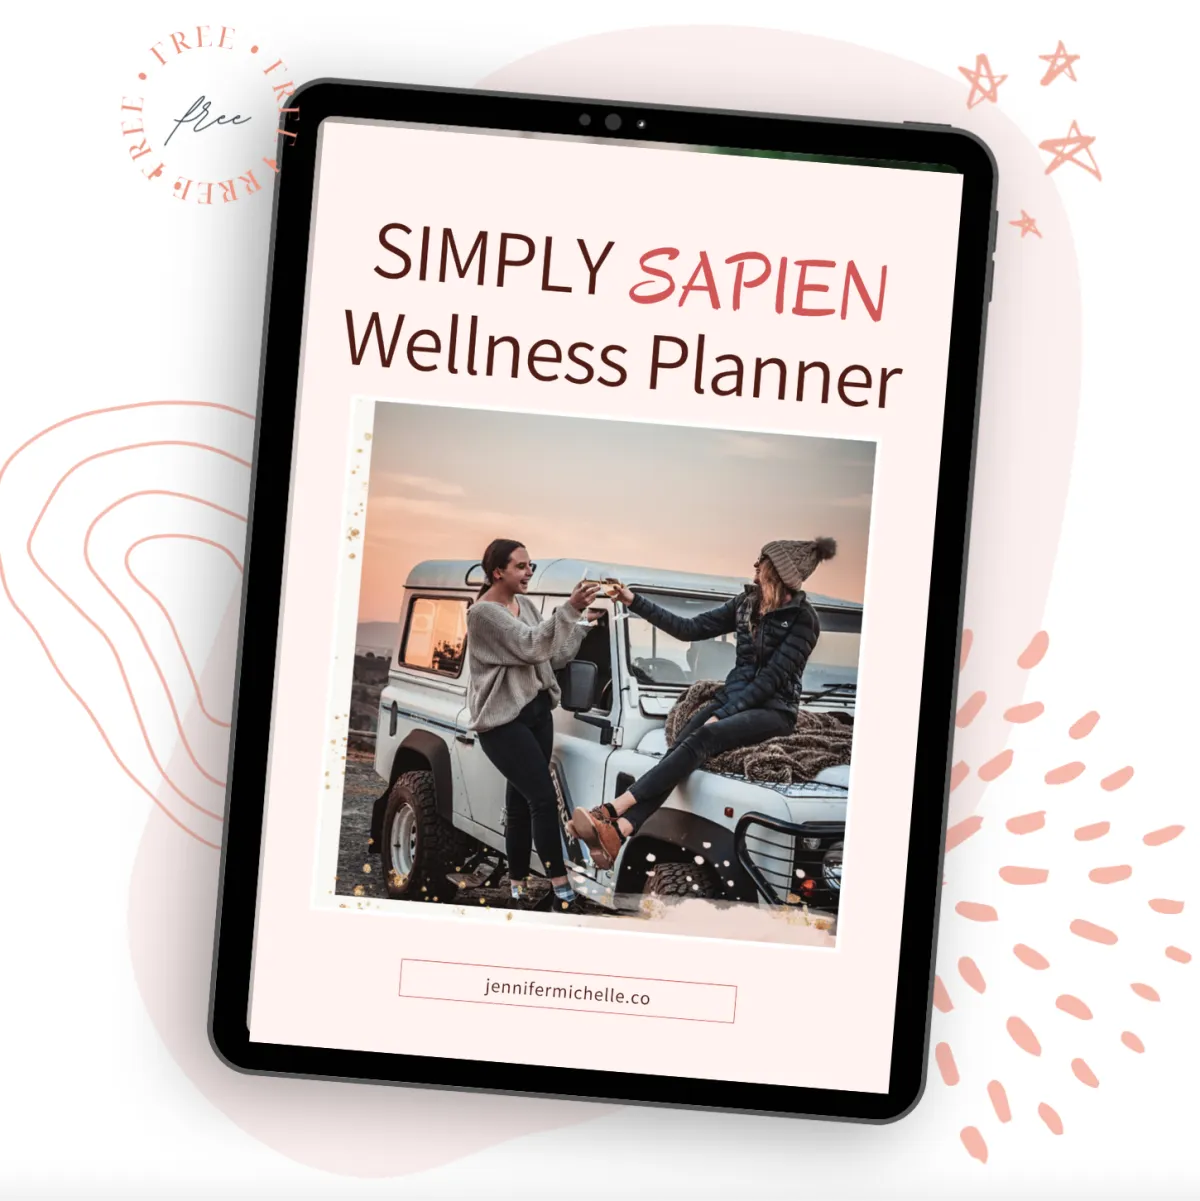 Simply Sapien 30 Day Wellness Planner